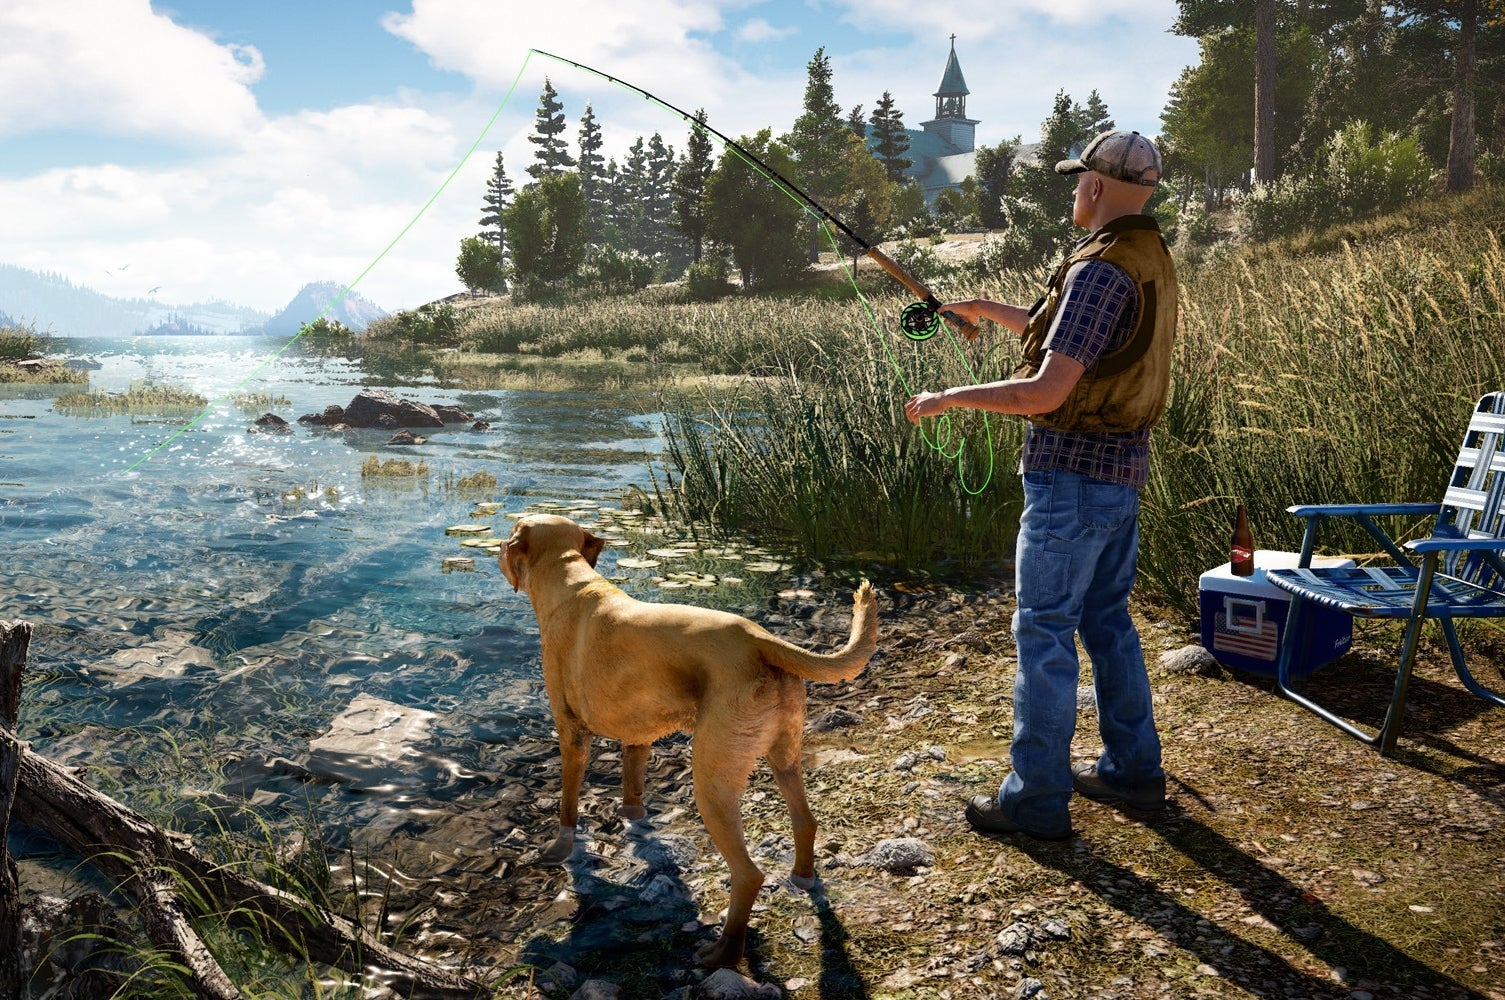 Immagine di La storia di violenza alla base dell'ambientazione di Far Cry 5 - articolo